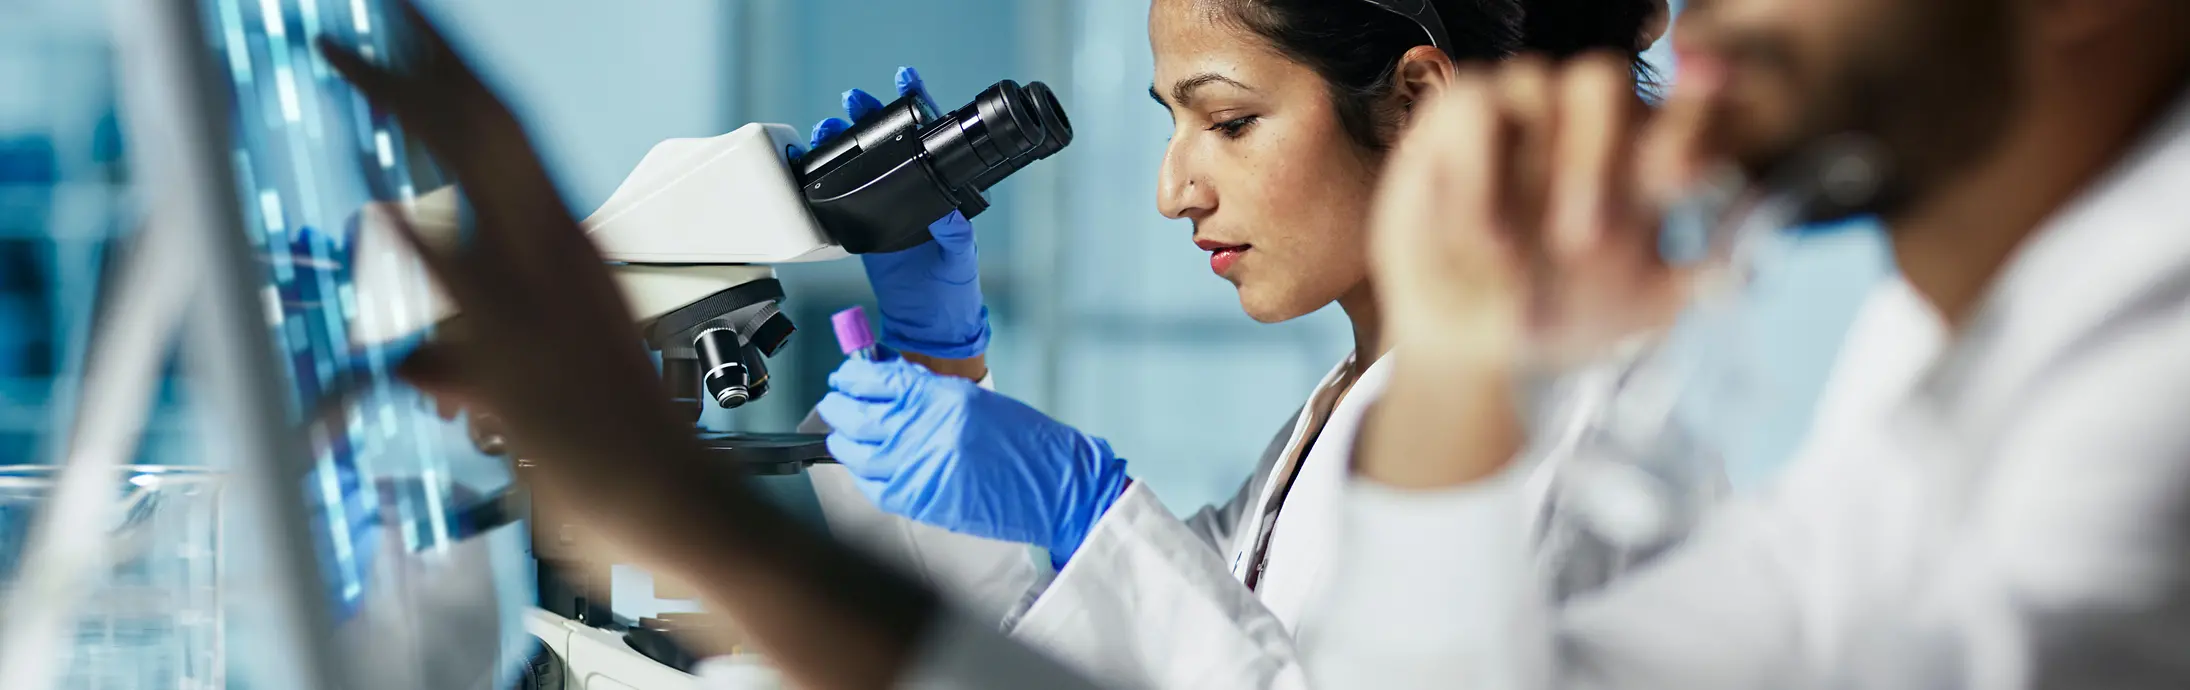 Un laboratorio con una mujer sentada delante de un microscopio mirando una muestra, a su lado, un hombro con barba mira una pantalla